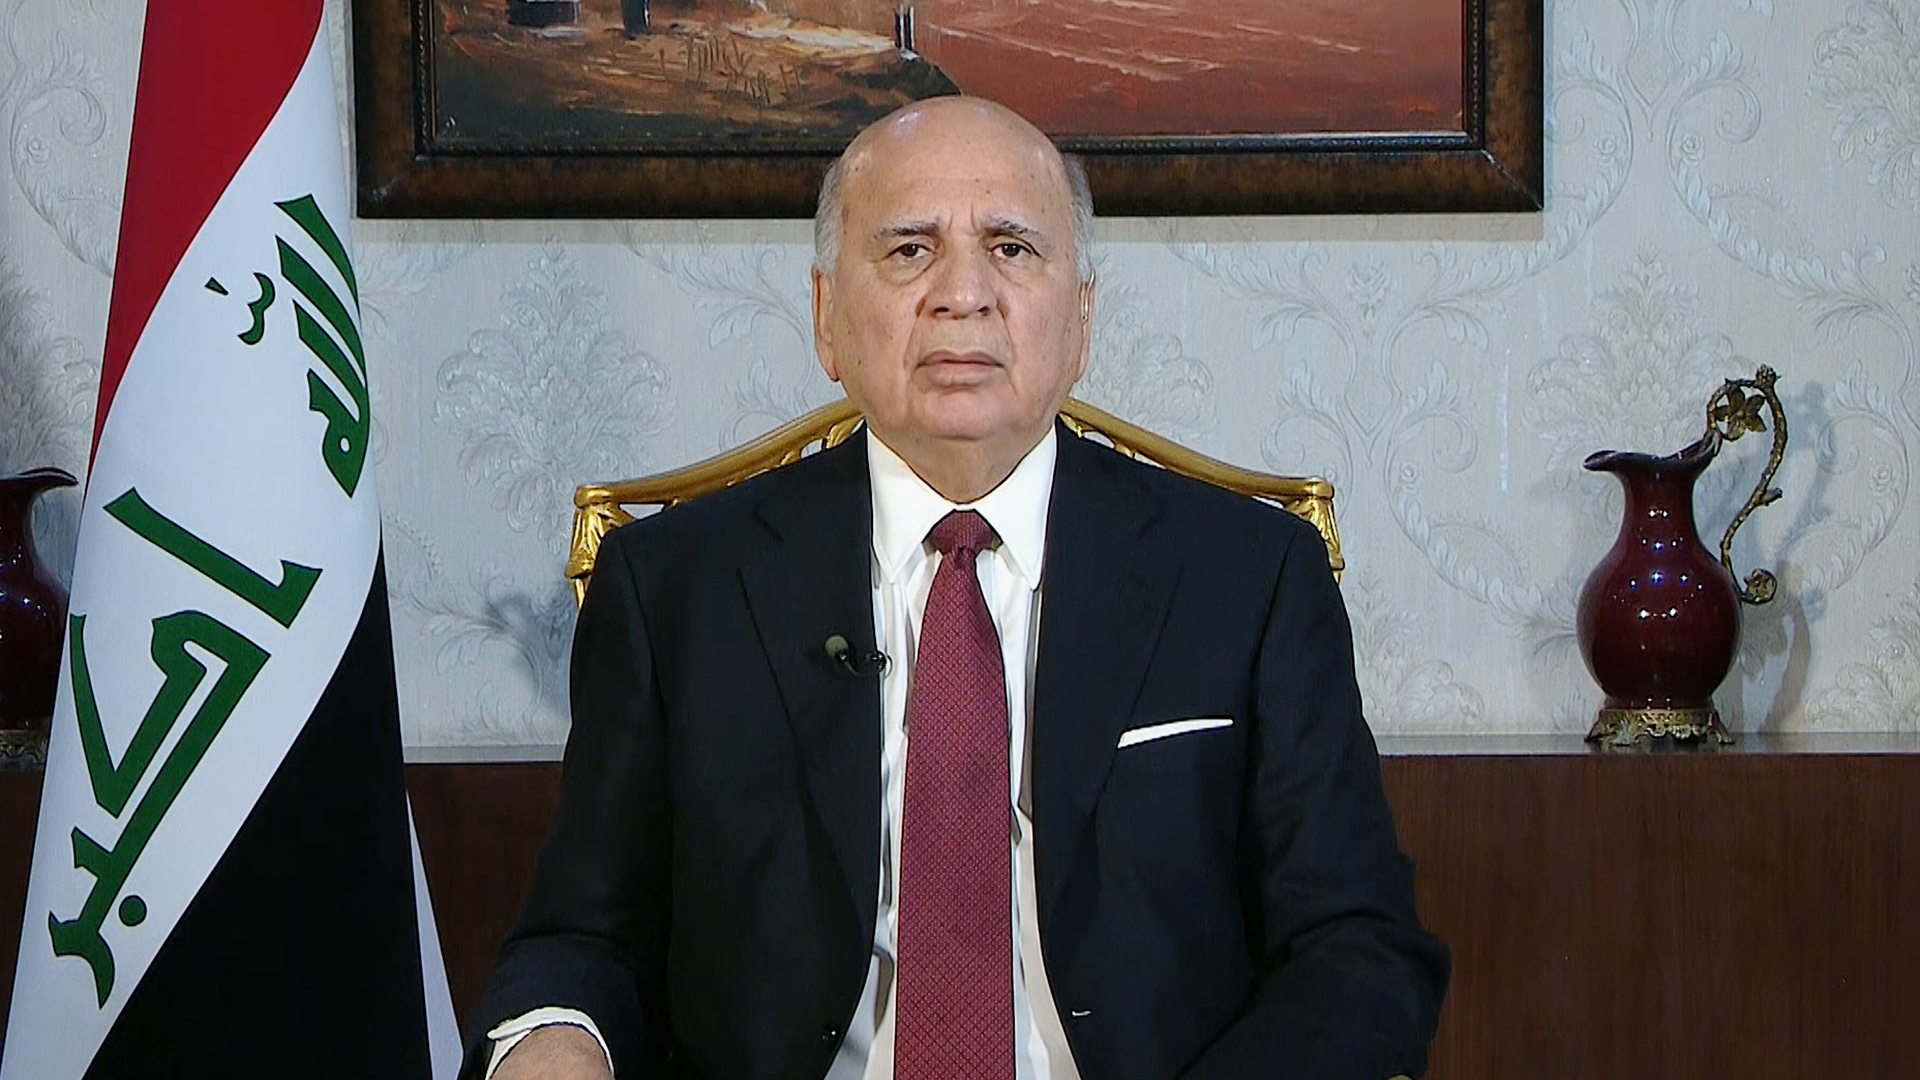 وزير خارجية العراق: نرفض تهجير الغزيين والمنطقة كلها تواجه خطر الحرب | أخبار – البوكس نيوز